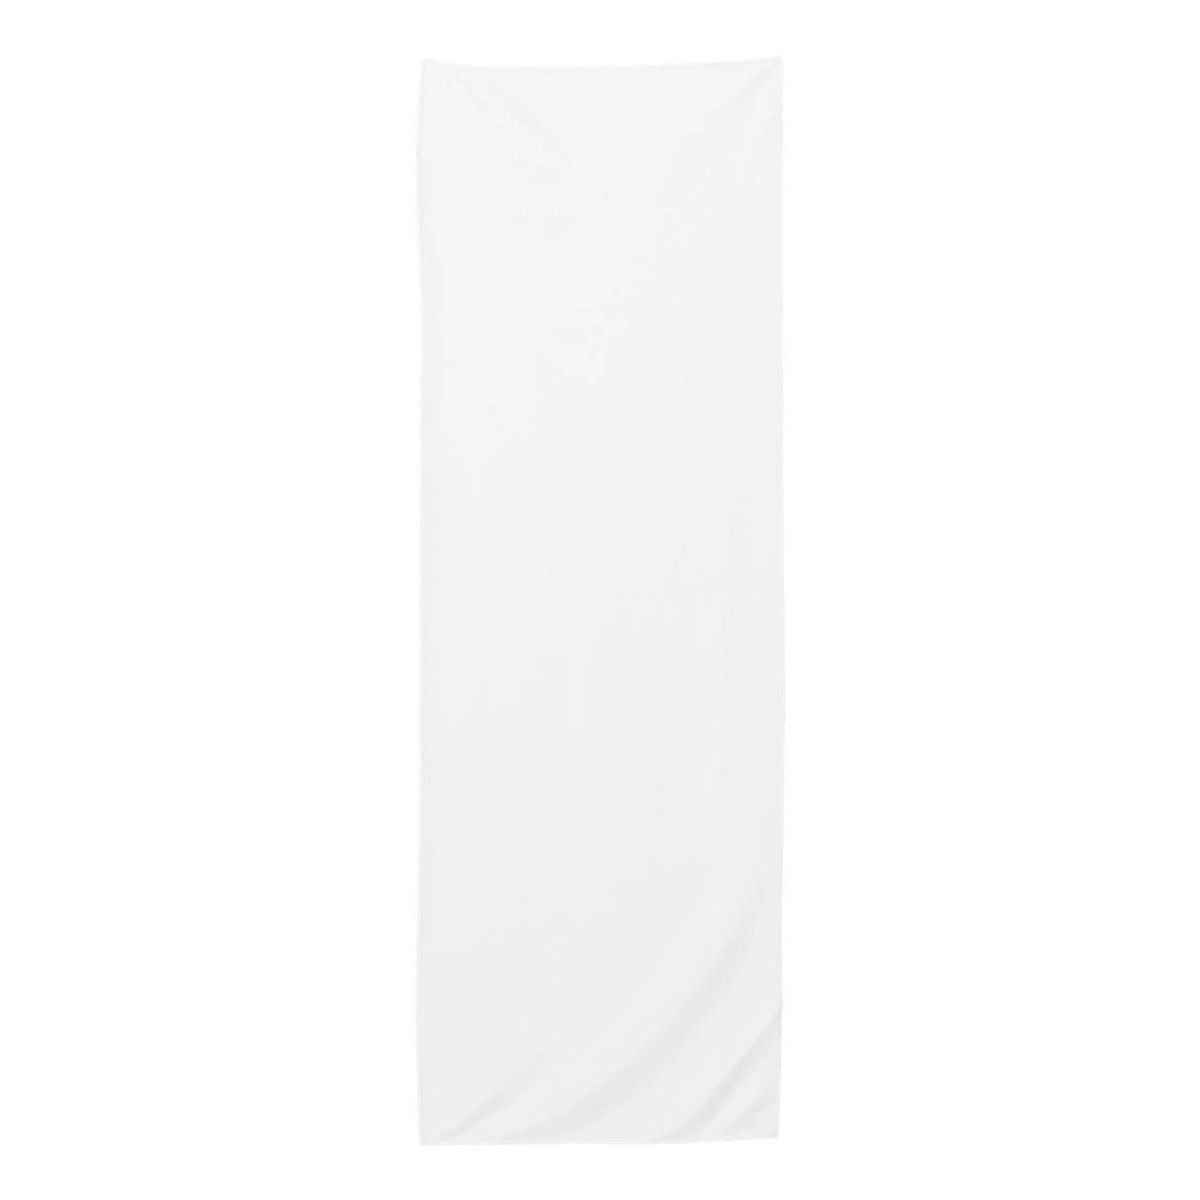 Carmel Towel Company Холодное полотенце, белый